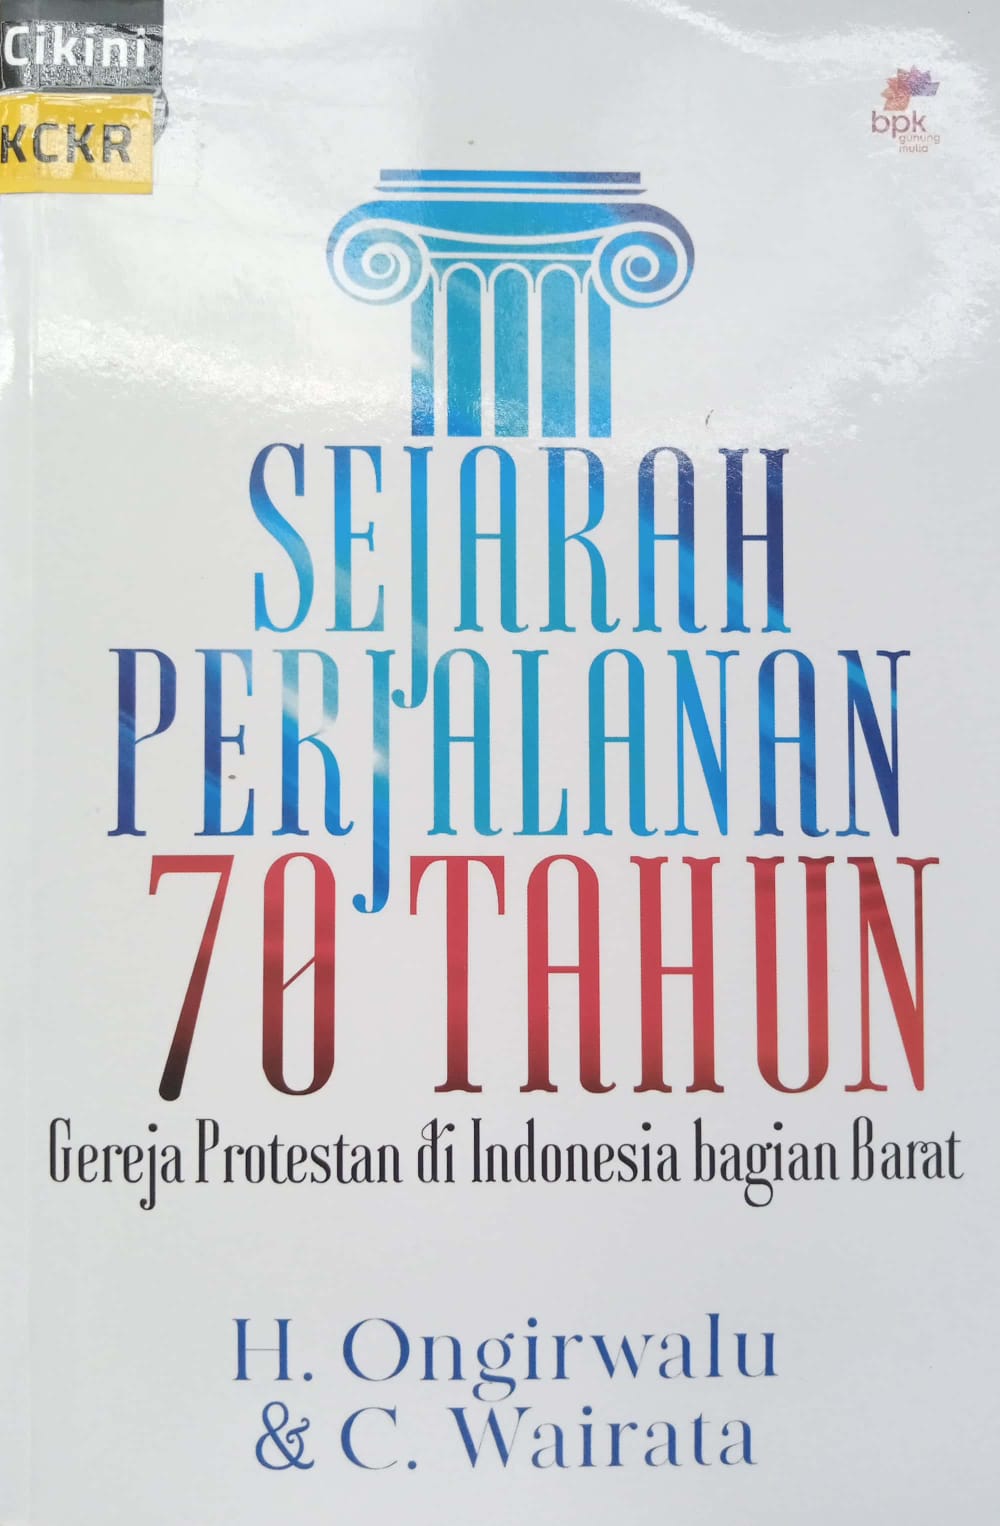 Sejarah perjalanan 70 tahun gereja protestan di Indonesia bagian barat